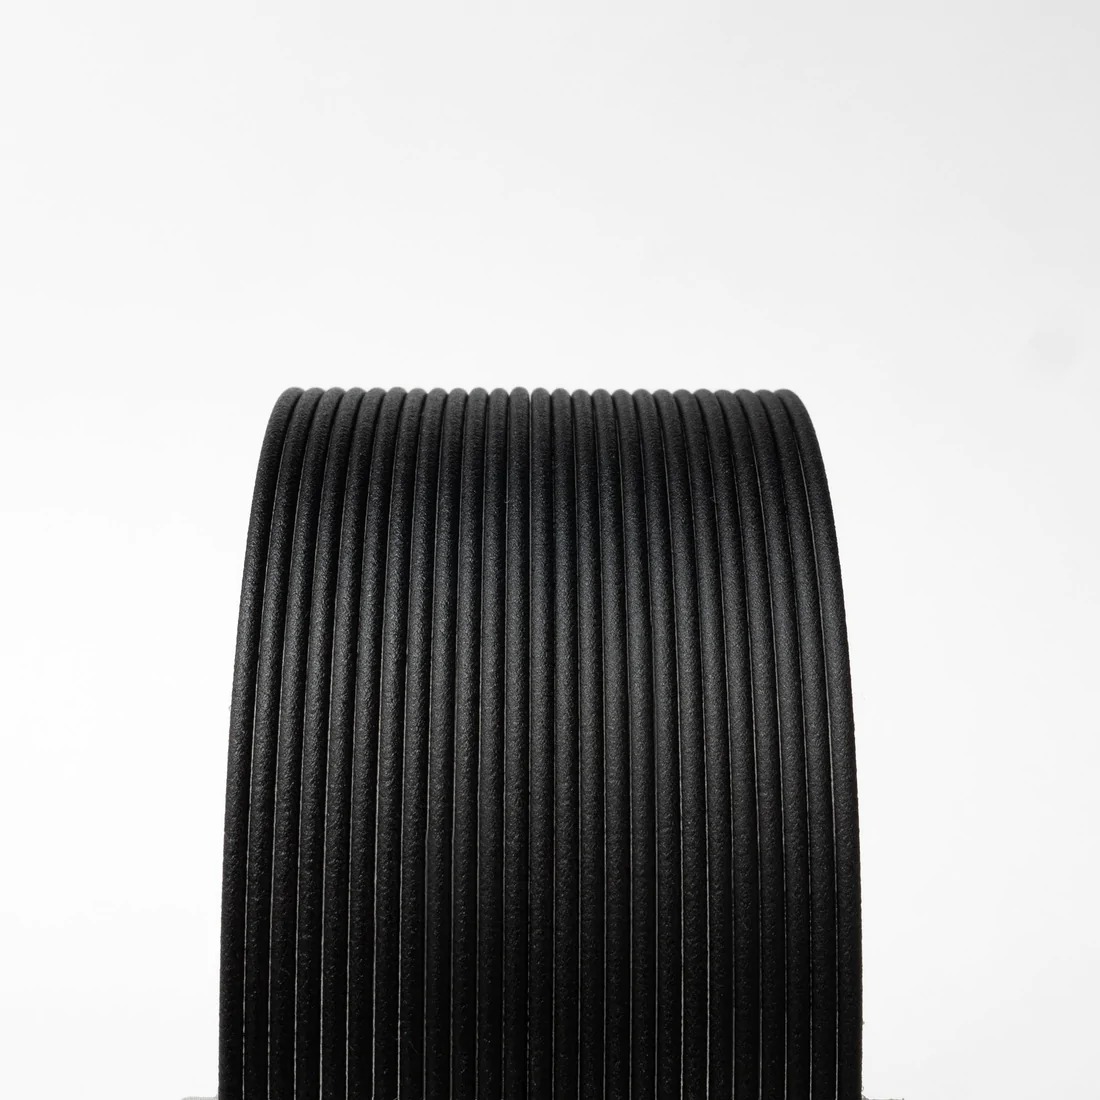 Carbon Fibre PLA 2.85mm 500gms